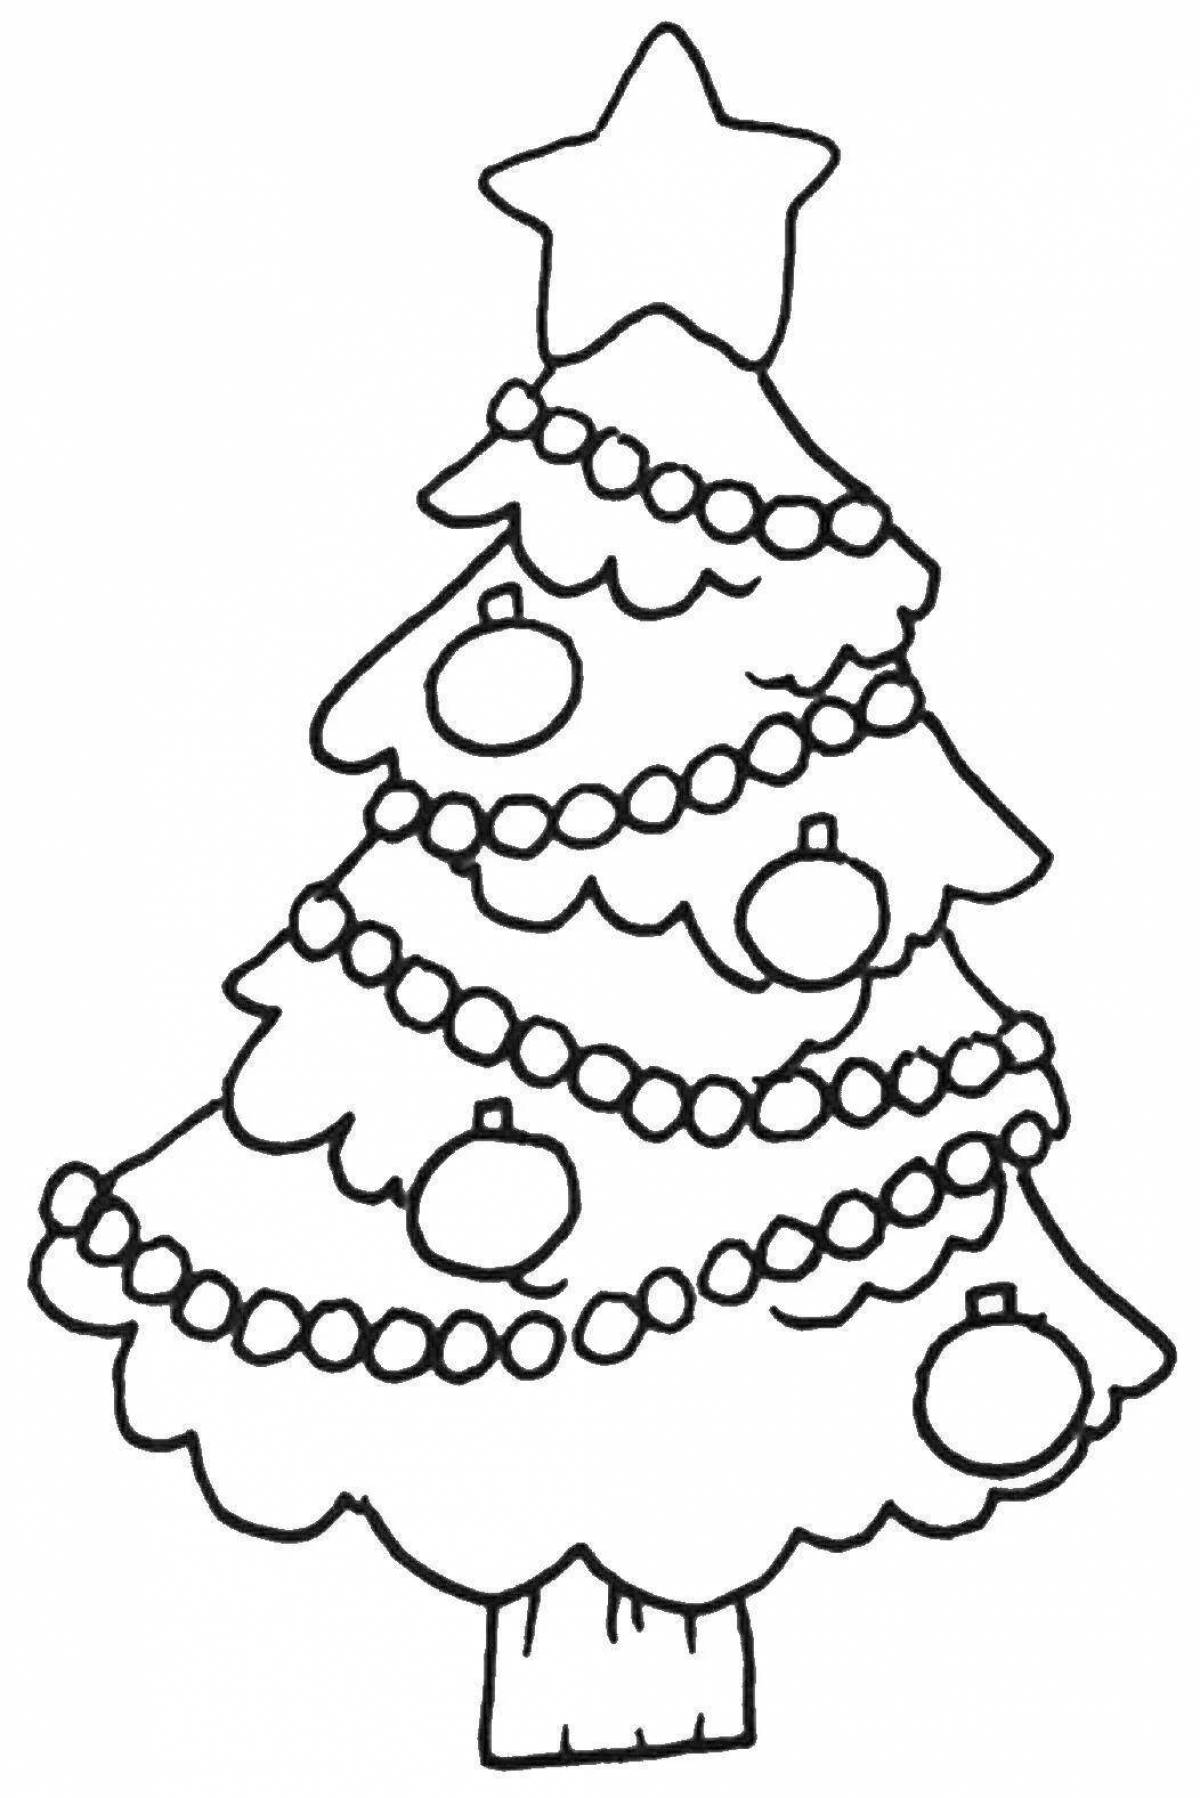 Яркая раскраска рождественская елка с шарами